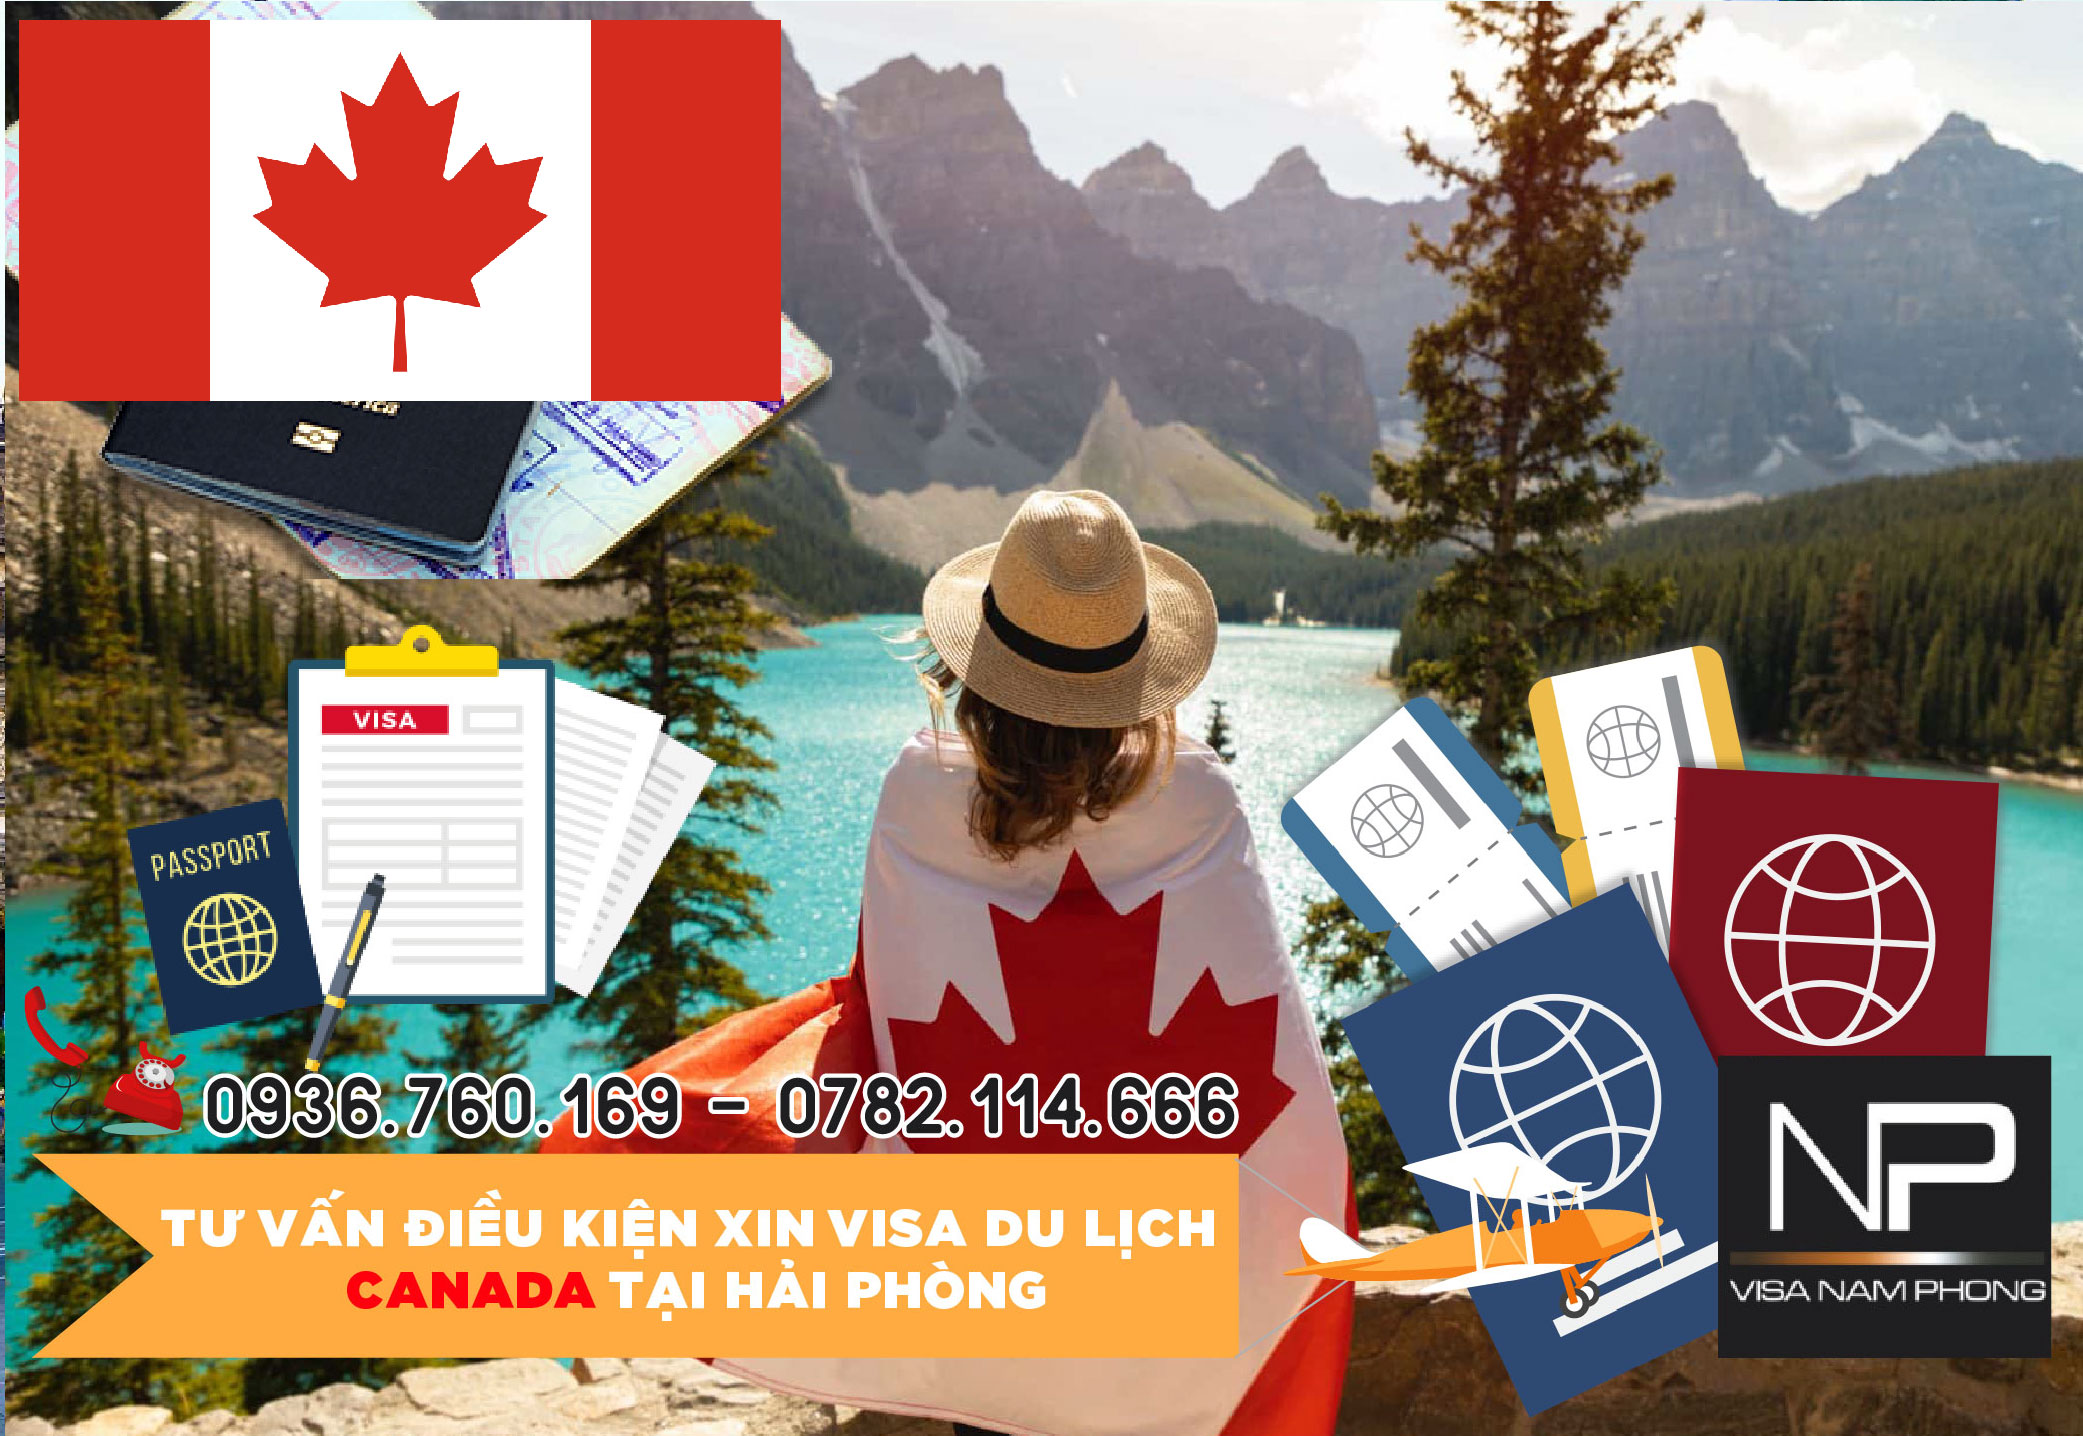 Tư vấn điều kiện xin visa du lịch Canada tại Hải Phòng